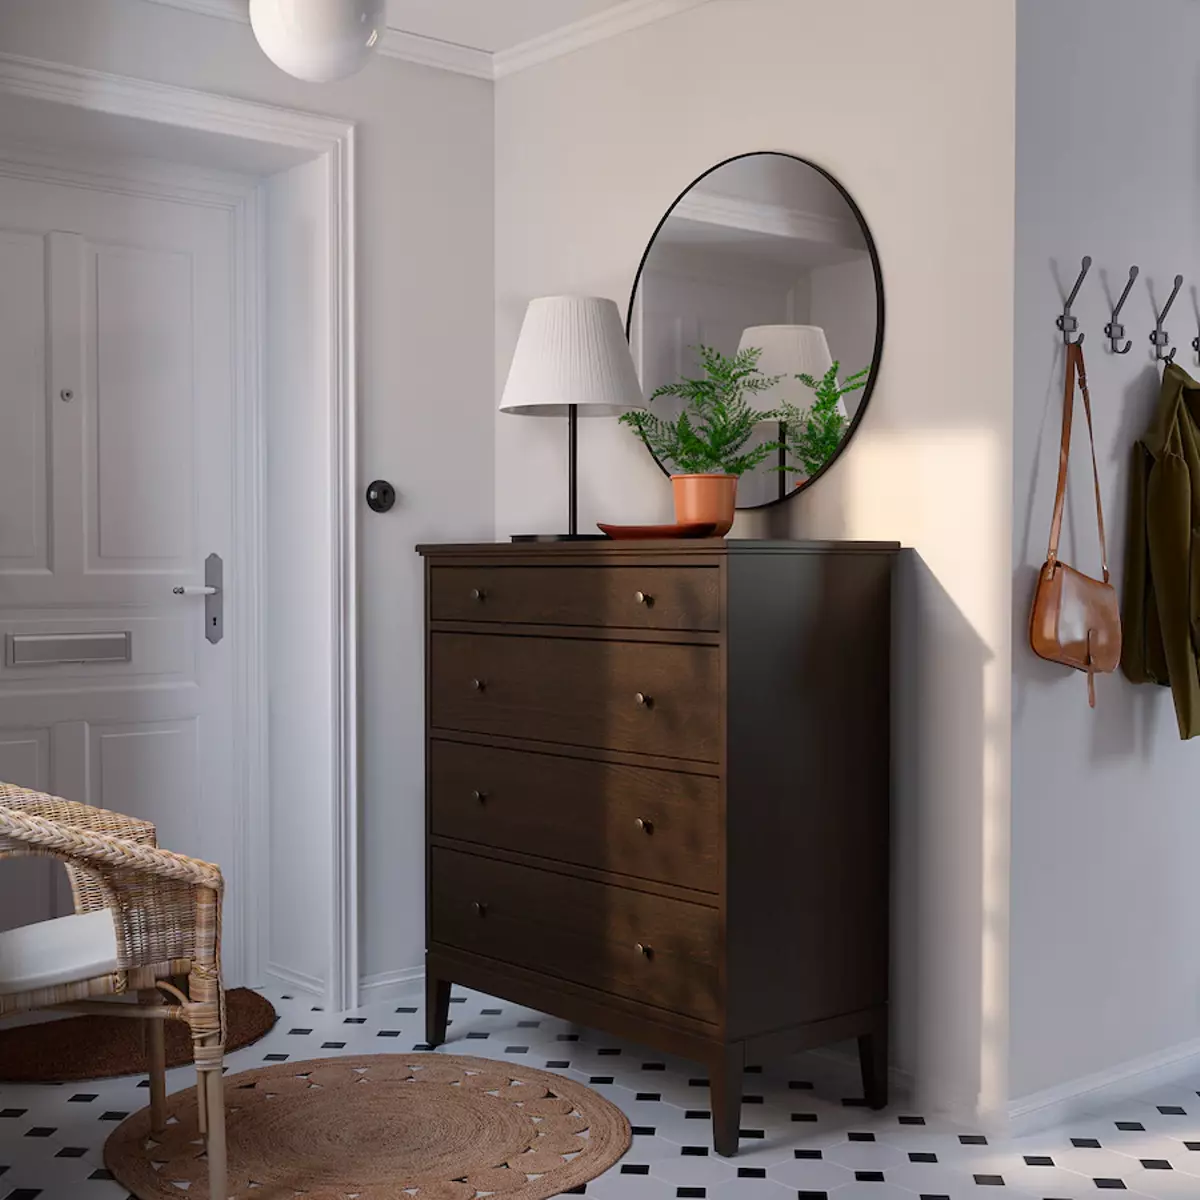 Cómodas Ikea | Para un recibidor o para tu habitación, este mueble en color negro es ideal